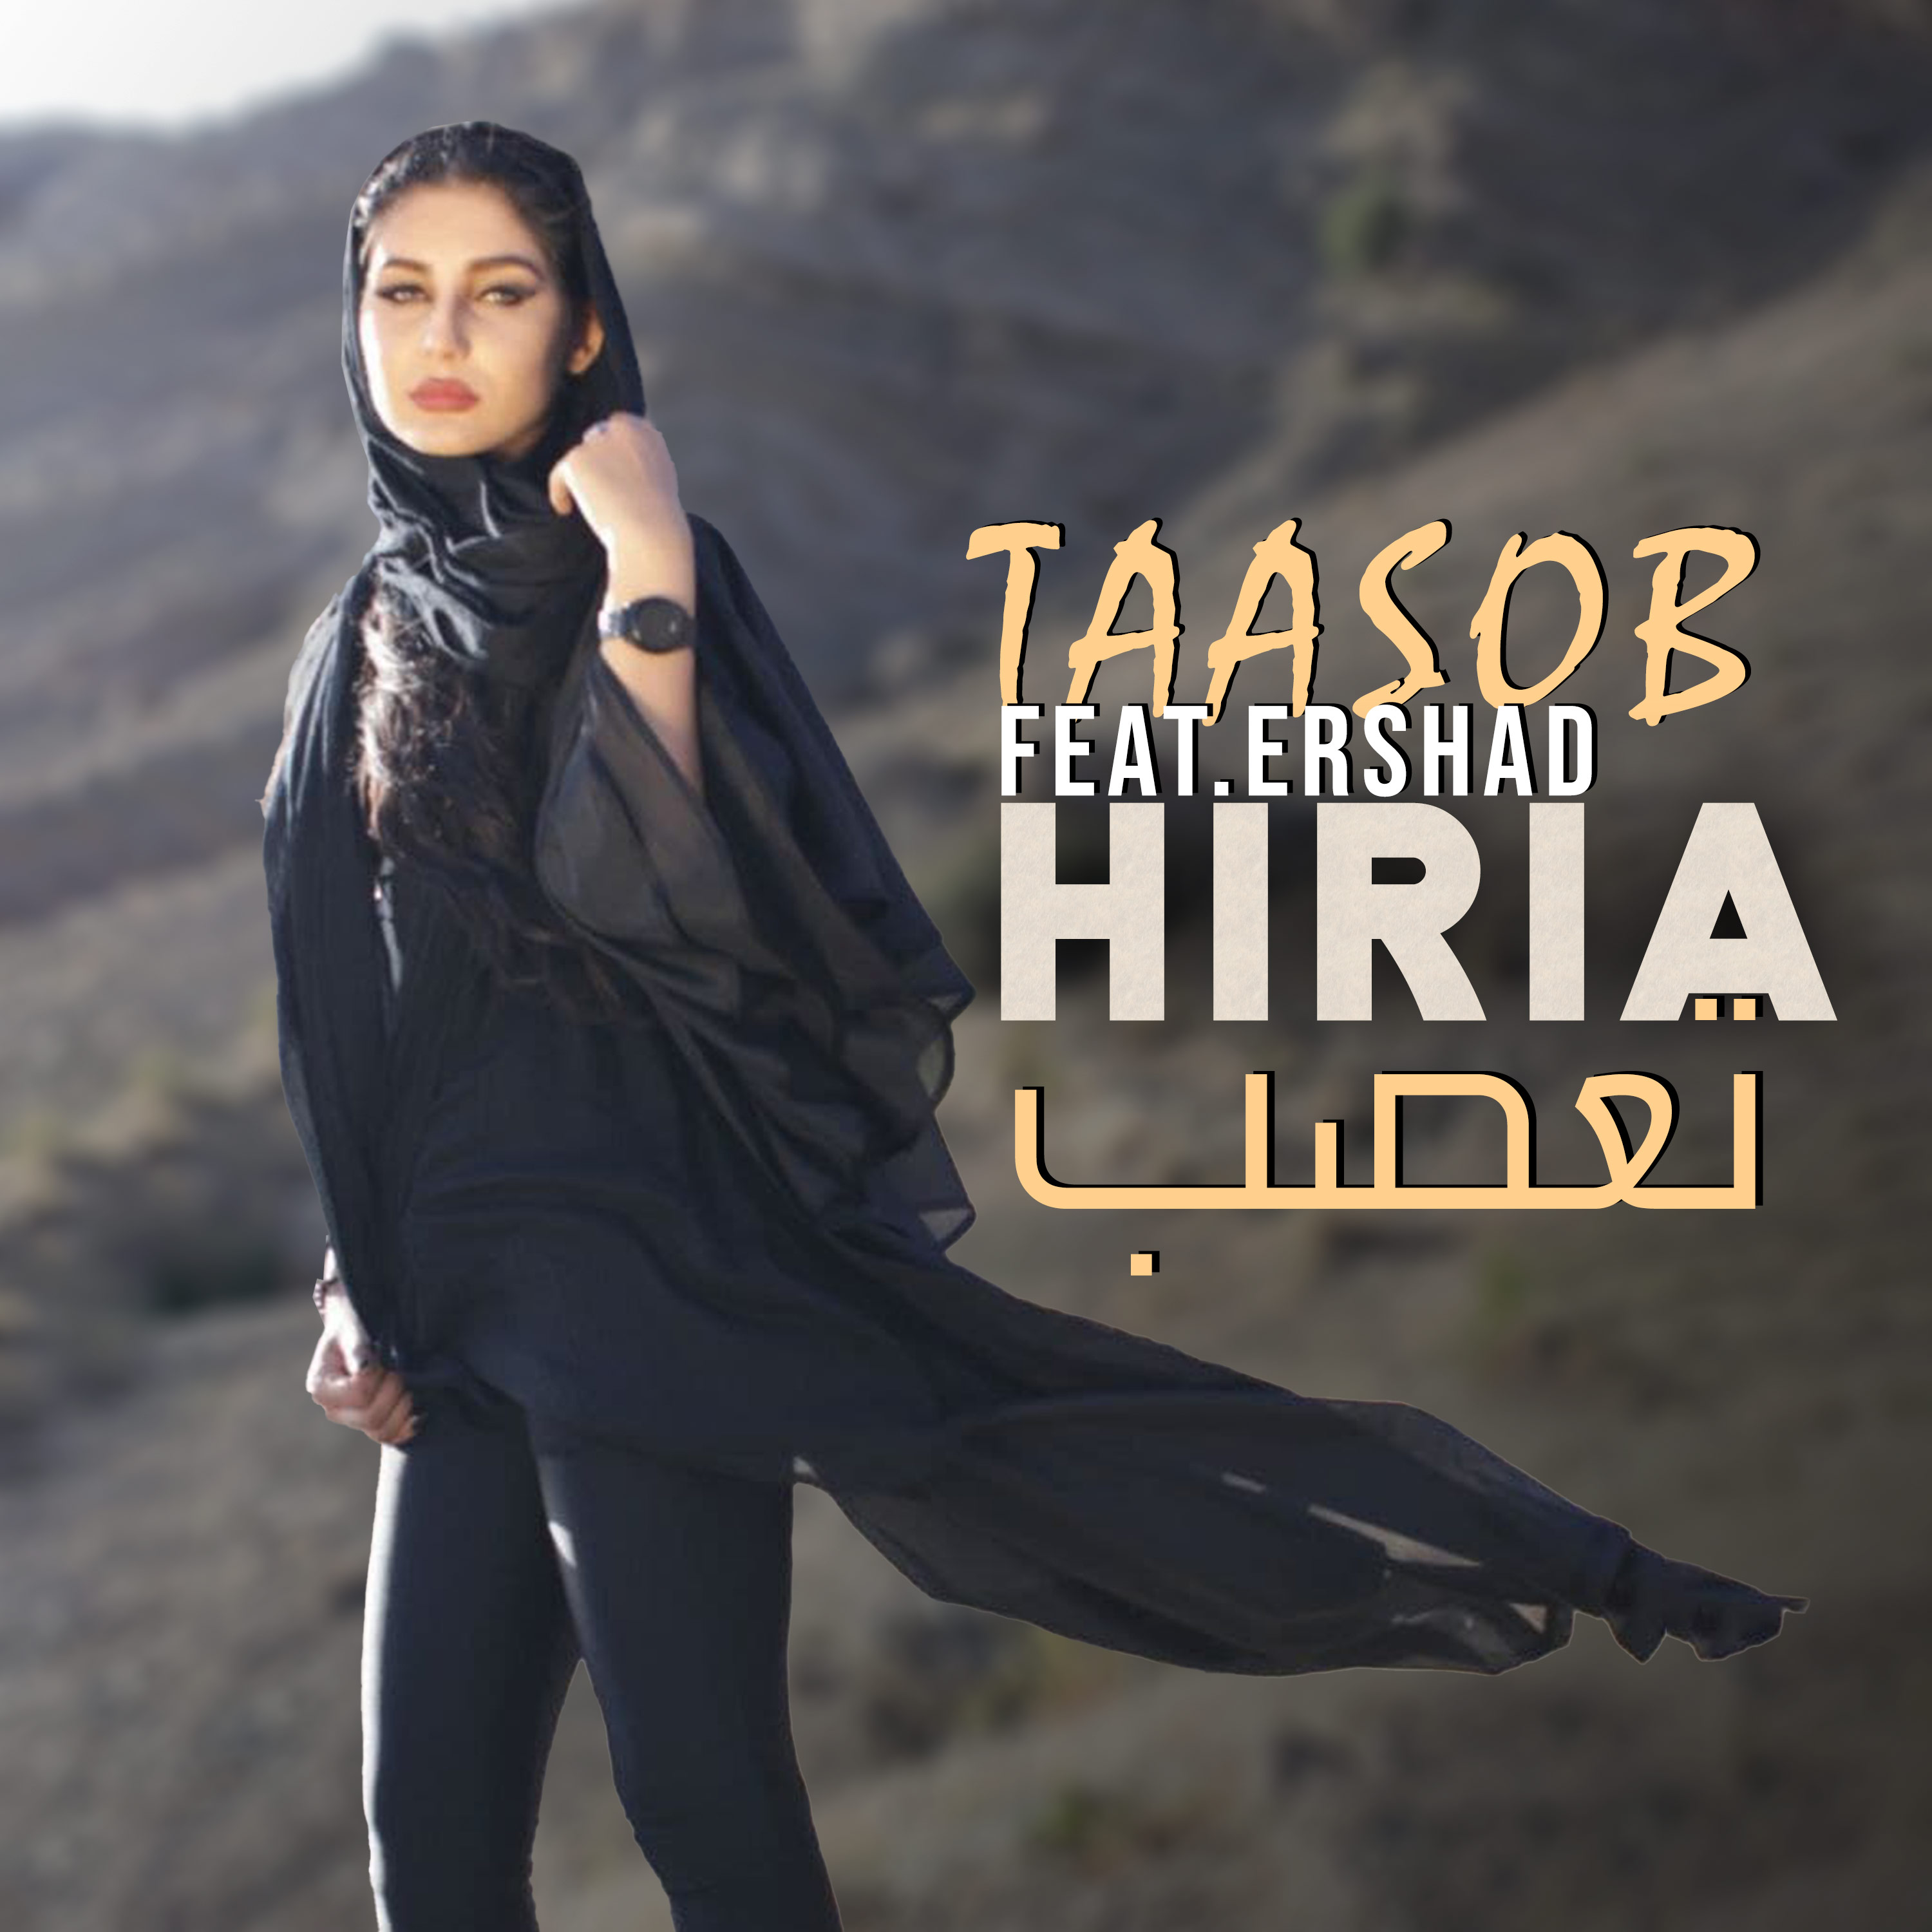  دانلود آهنگ جدید هیریا - تعصب | Download New Music By Hiria - Taasob(feat. Ershad)